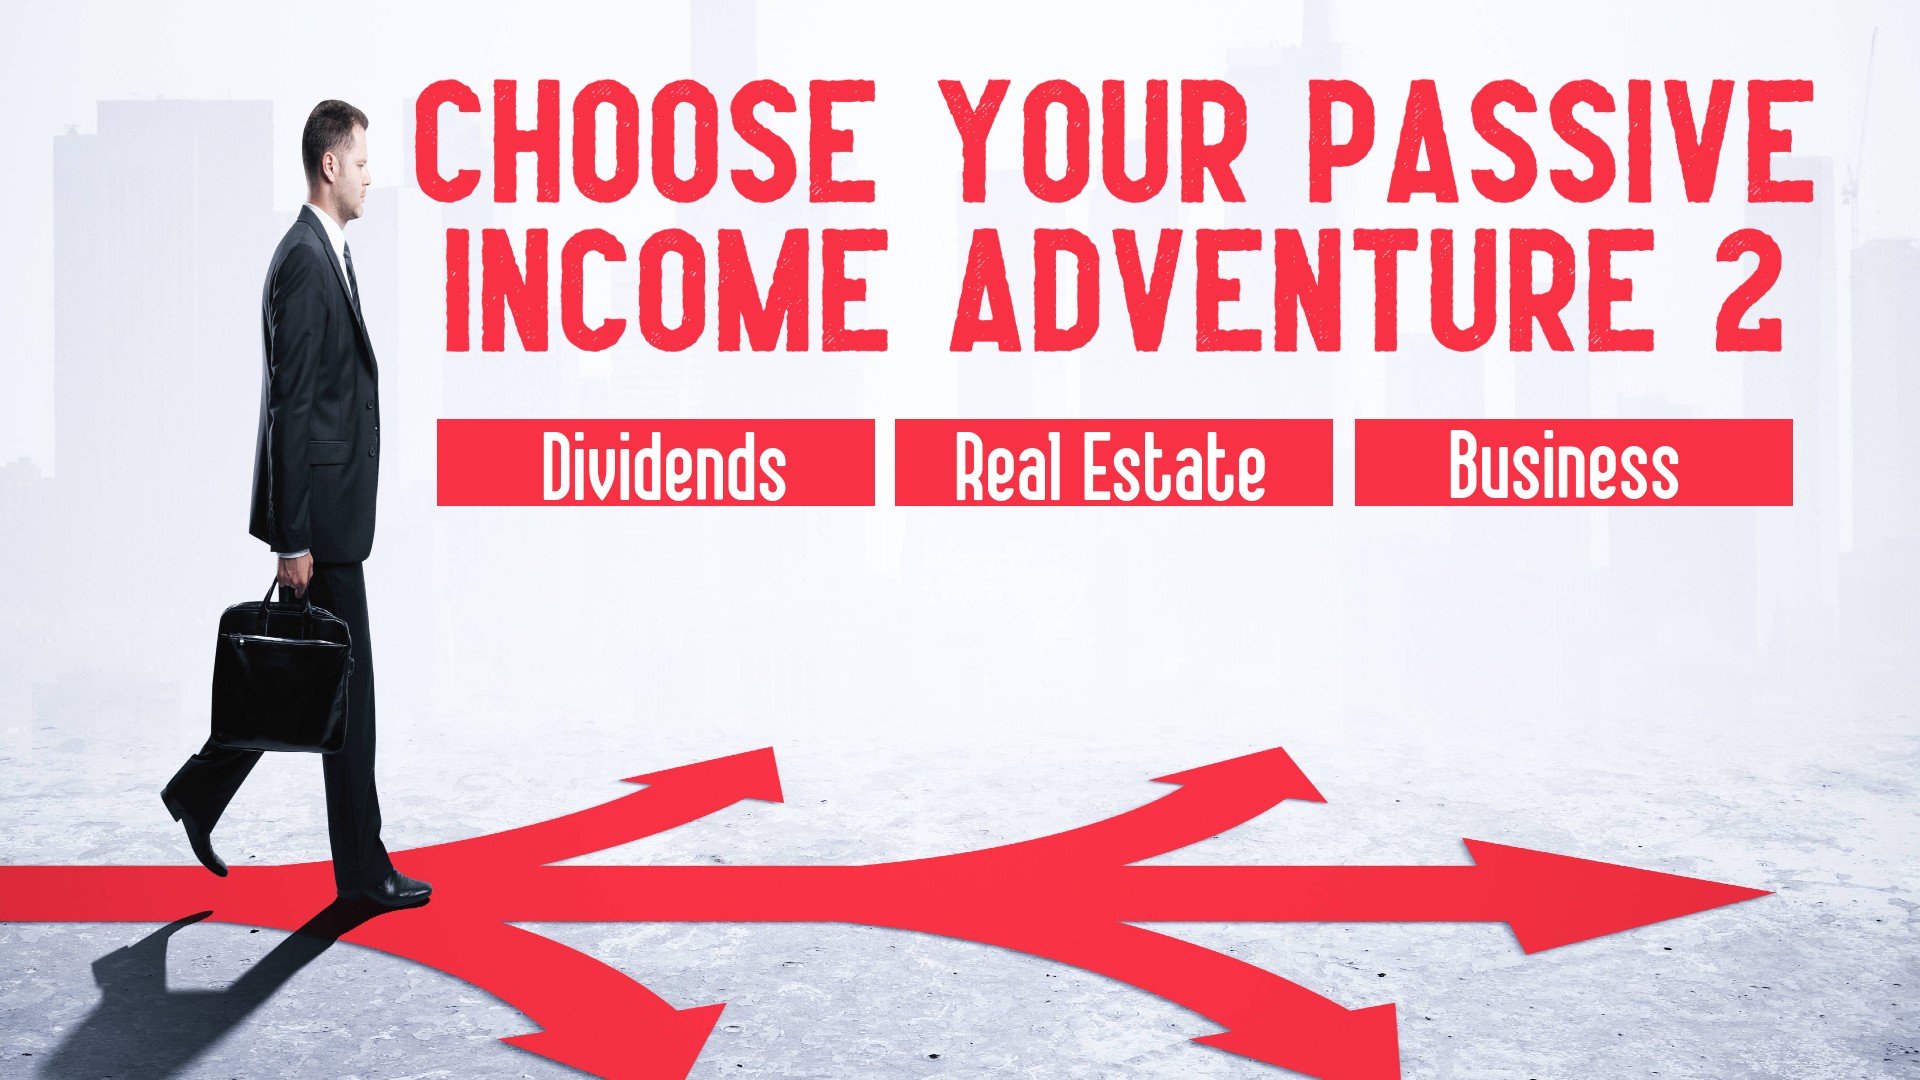 Choose Your Passive Income Adventure 2